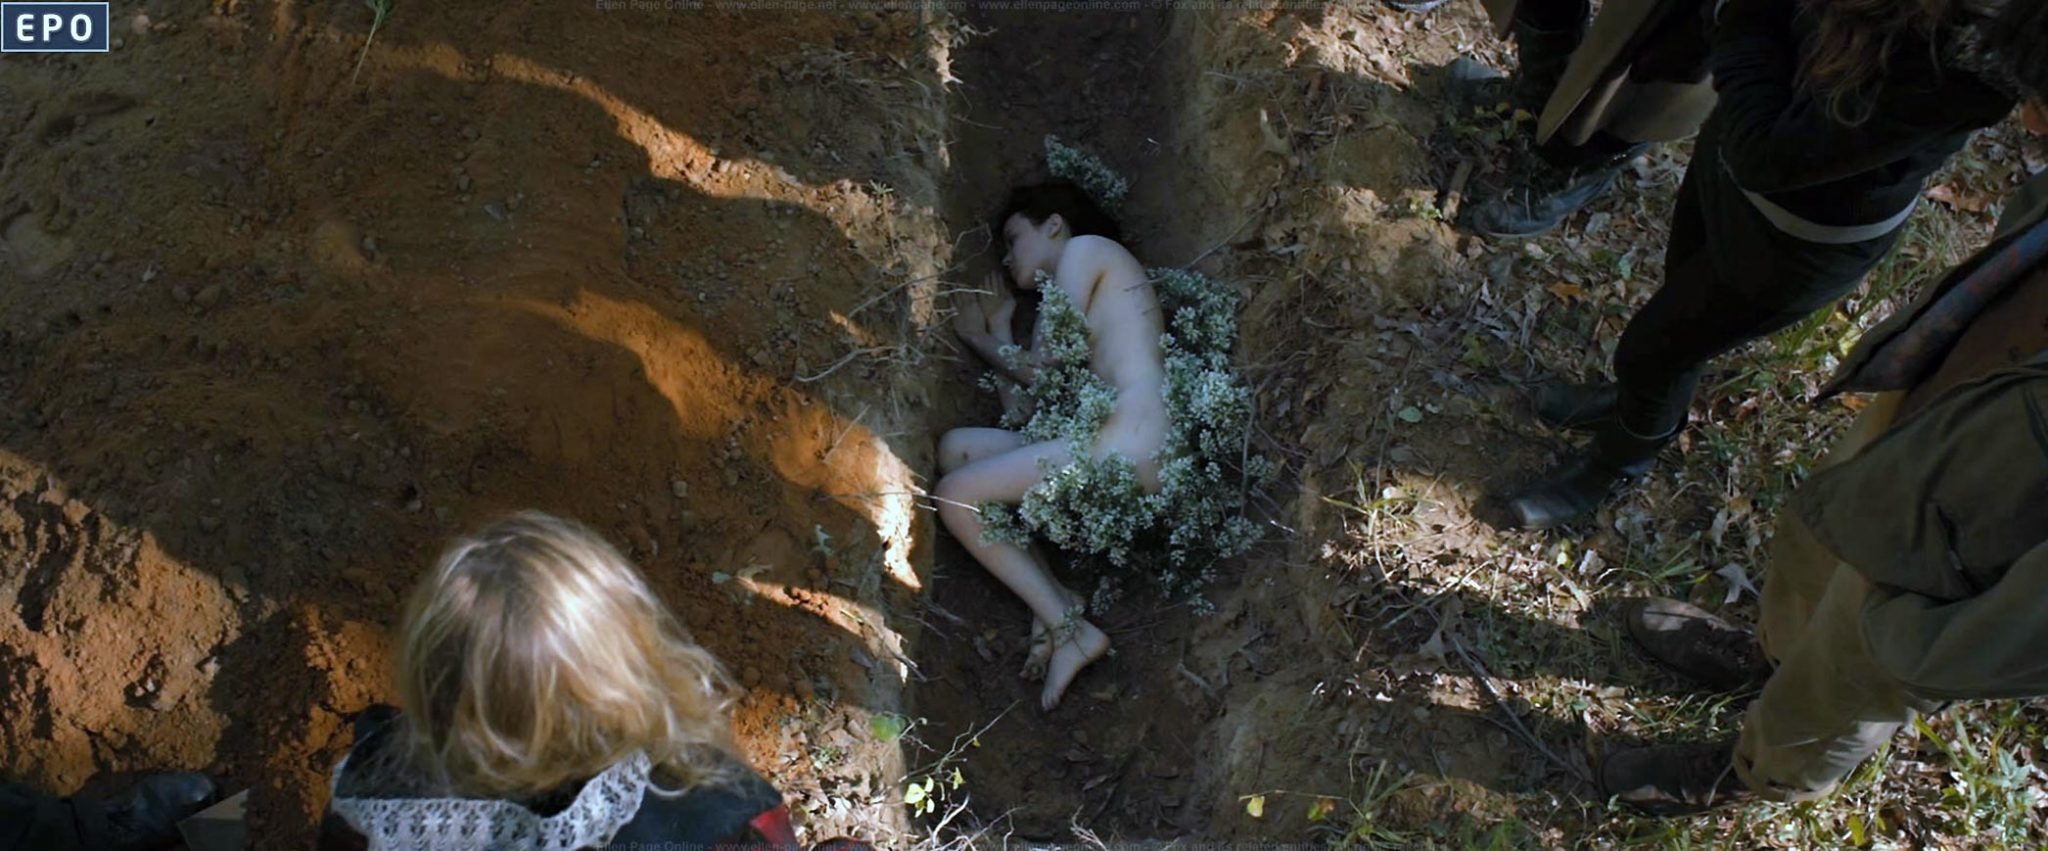 Elliot Ellen Page Nude Pics And Vivid Sex Lesbo Scenes 3369